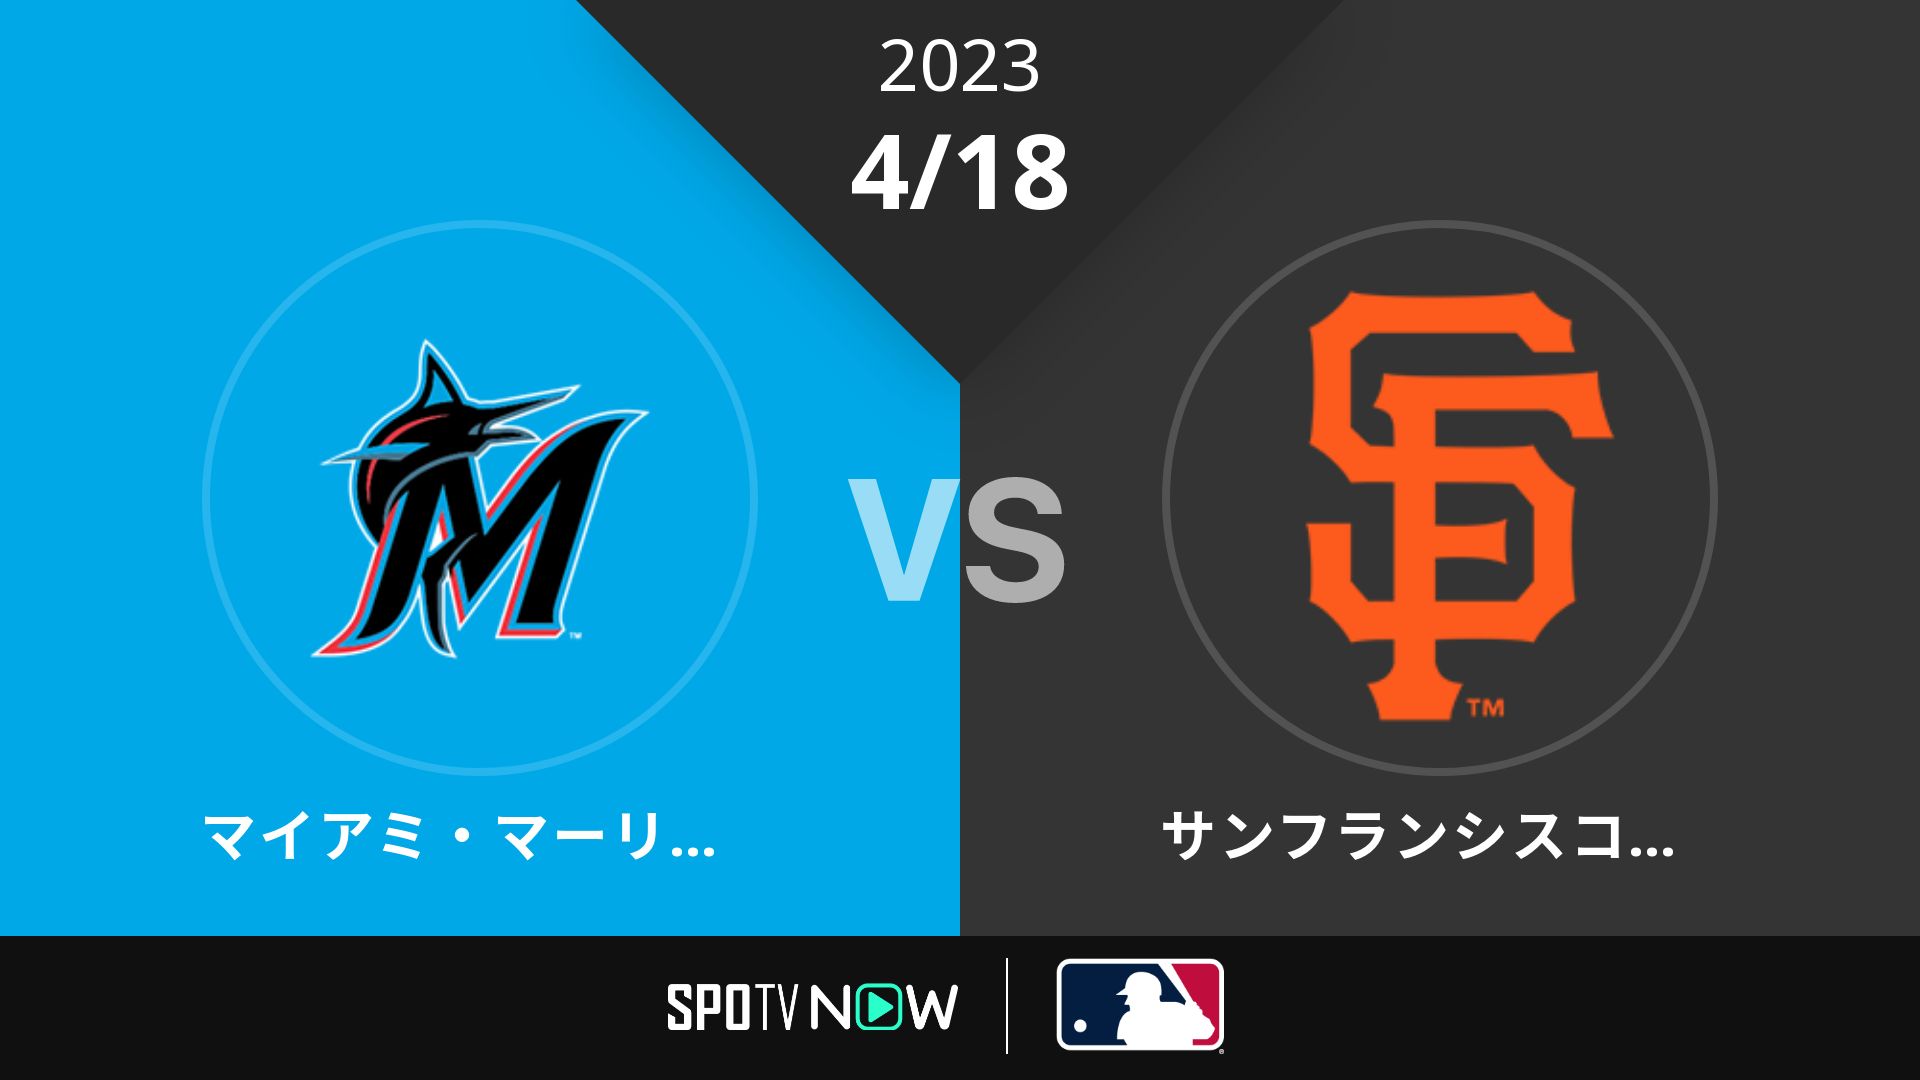 2023/4/18 マーリンズ vs ジャイアンツ [MLB]